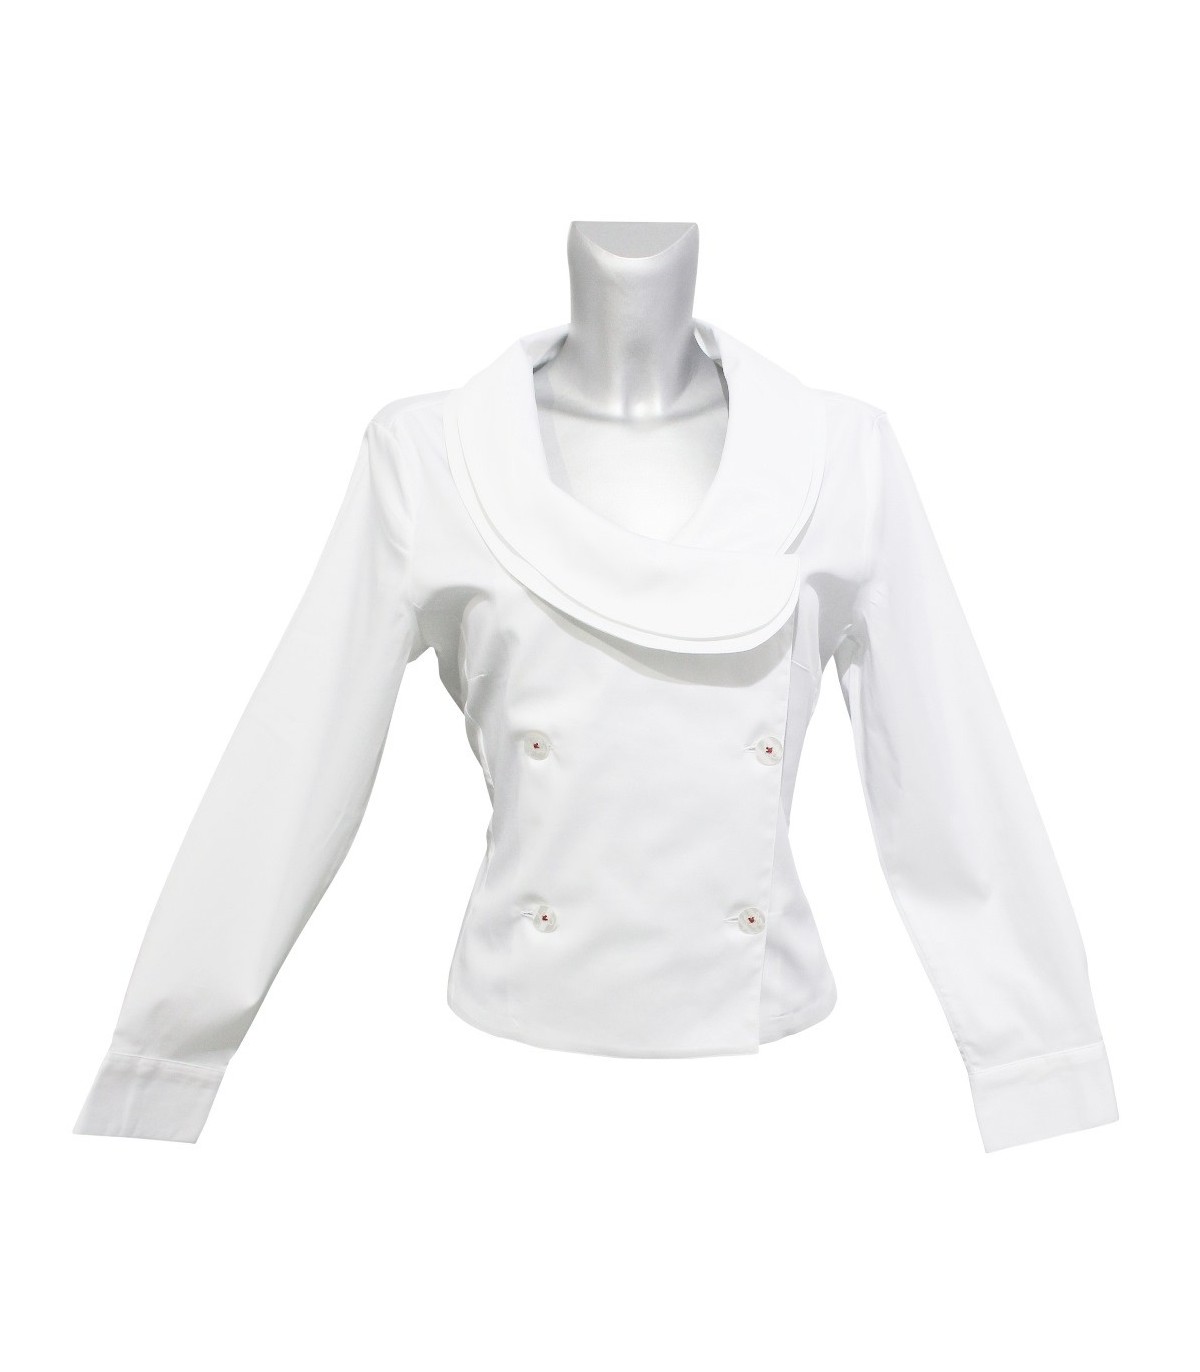 Kurz geschnittene Bluse in weiß mit doppelter Knopfleiste (jeweils 3  Knöpfe) und ausgefallenem Kragen